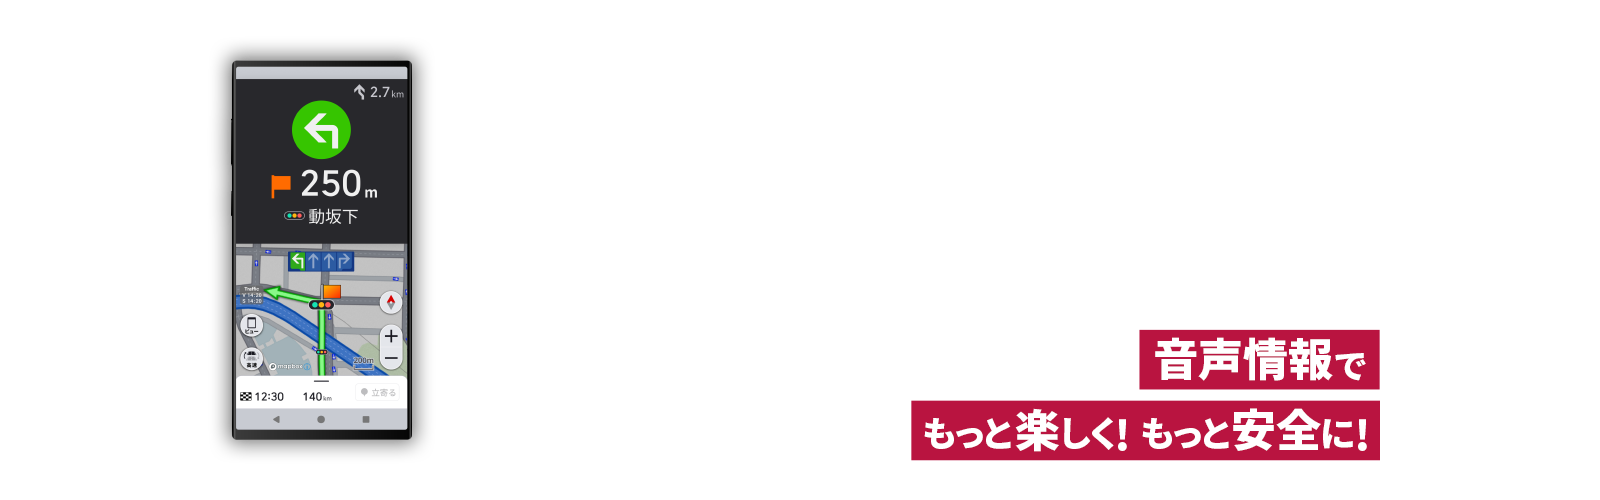 音声情報でもっと楽しく！もっと安全に！バイク専用ナビゲーションアプリ MOTTO GO【モットゴー】